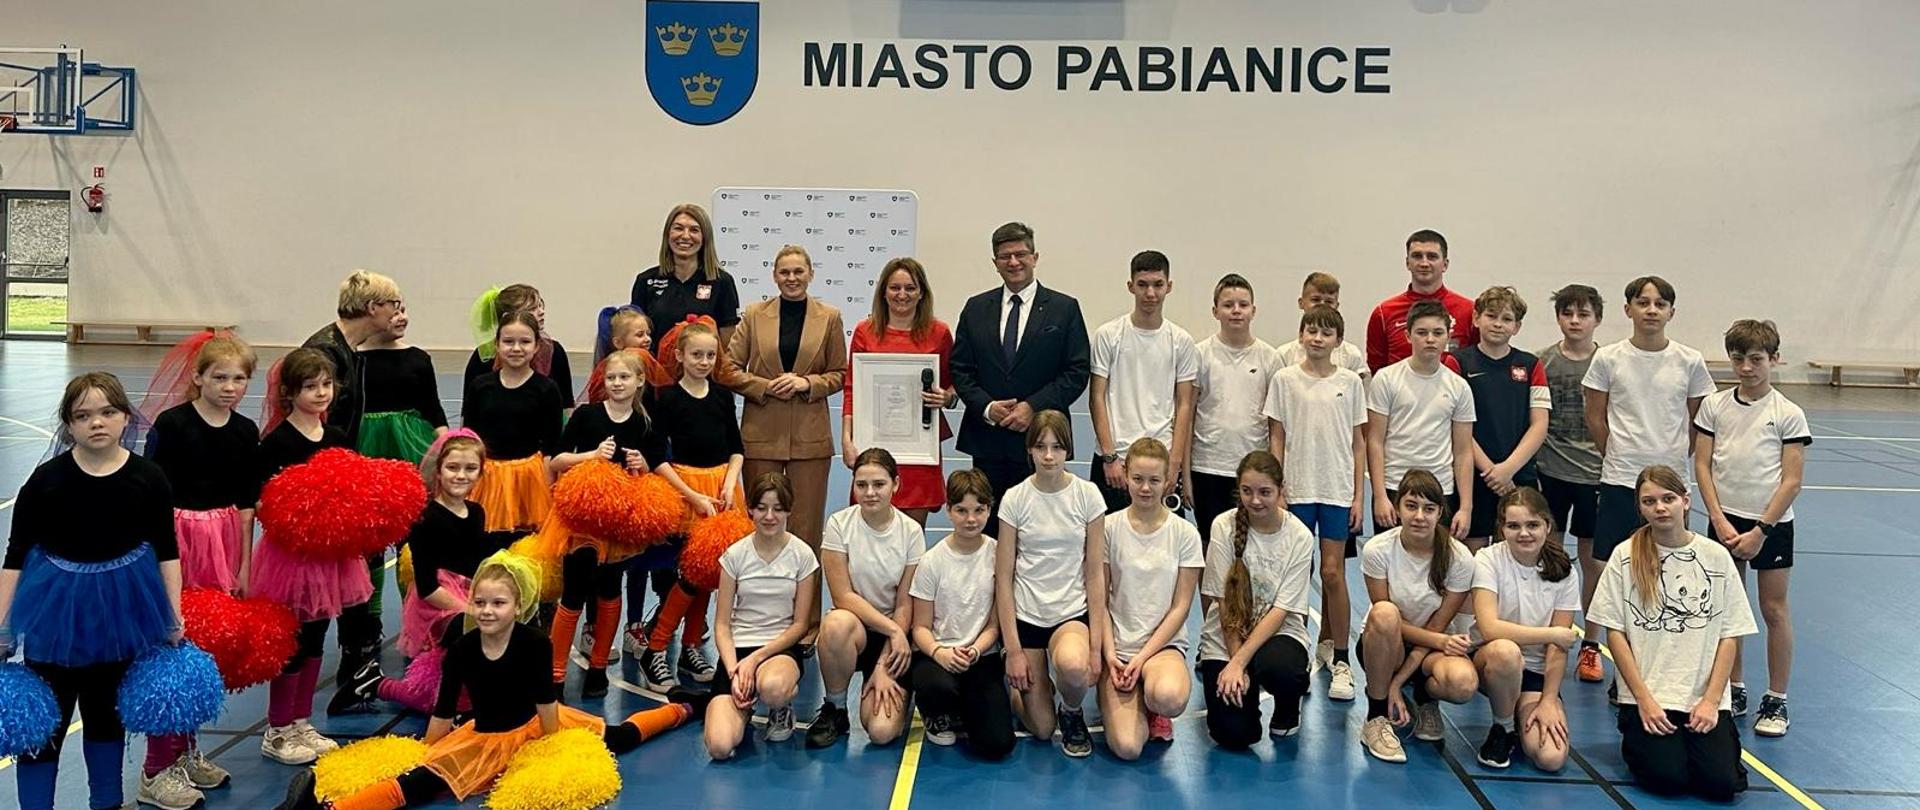 Minister Barbara Nowacka pozuje do zdjęcia z grupą dzieci na sali gimnastycznej 